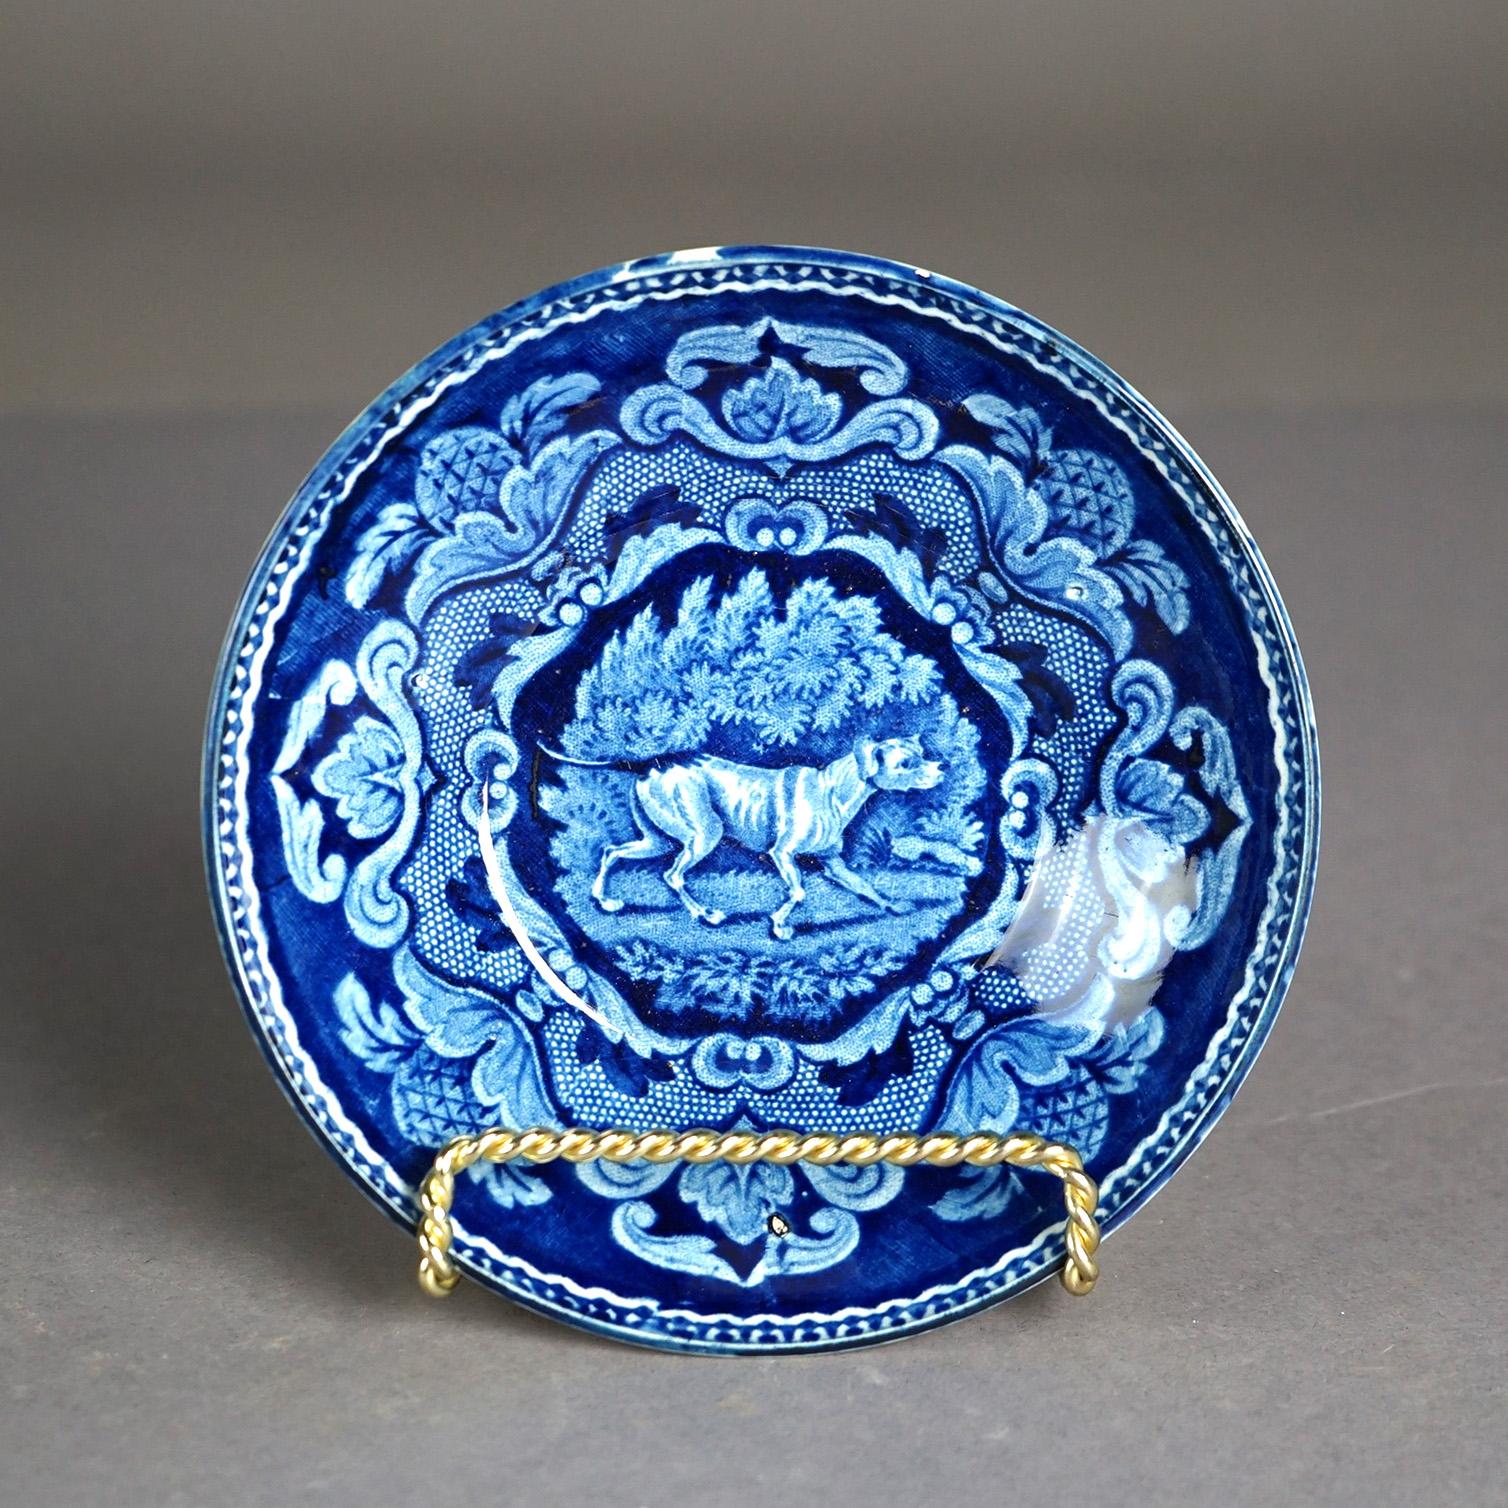 Antike flow-blaue Keramikschalen mit Hund und Vögeln aus dem 19. Jahrhundert

Maße - 1,5 